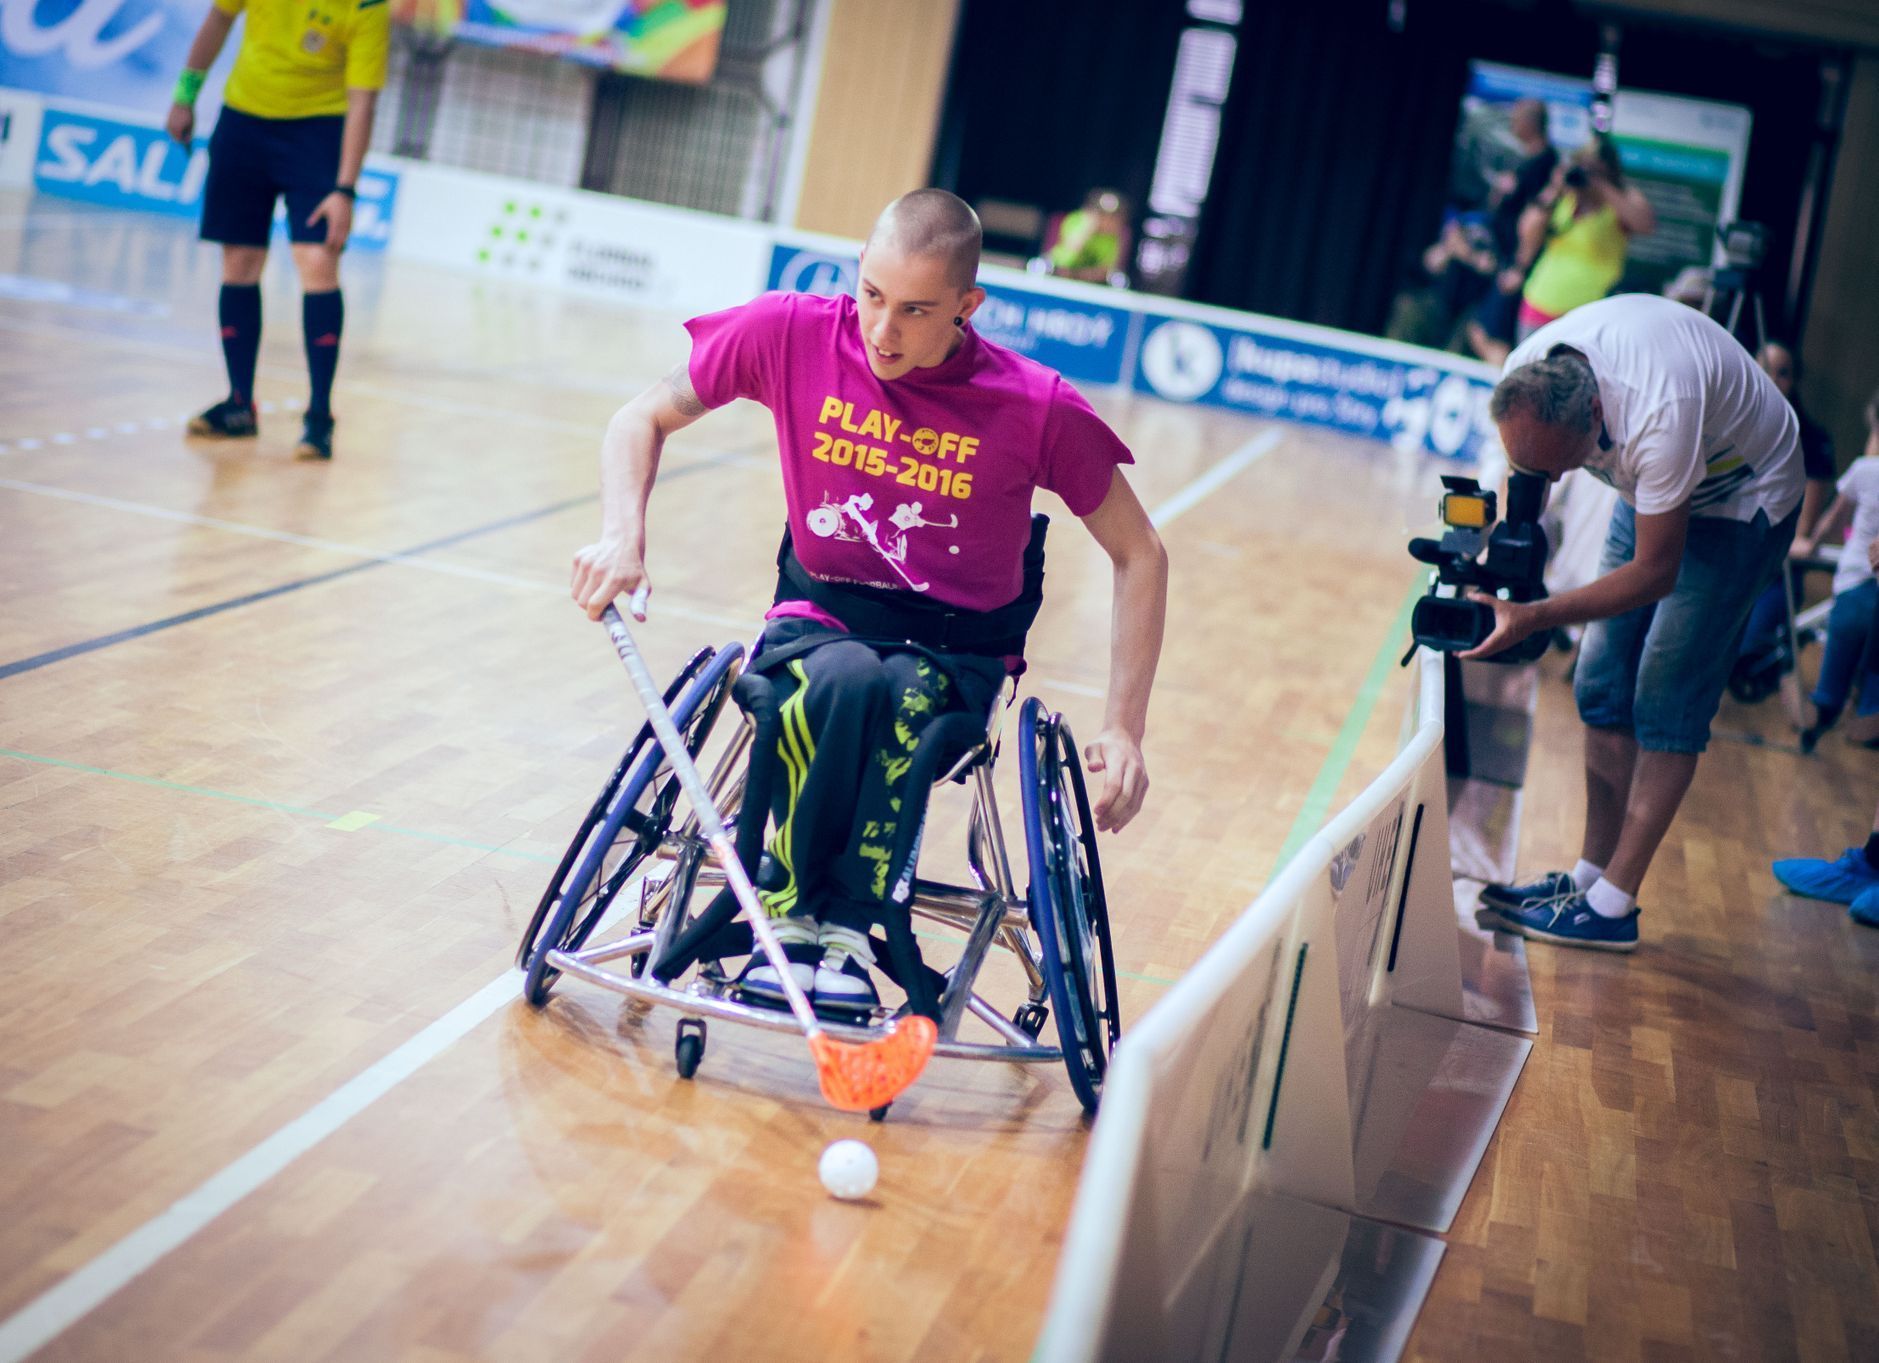 Ivan Nestával si nyní plní sen - hraje florbal za reprezentaci vozíčkářů a chtěl by na paralympiádu